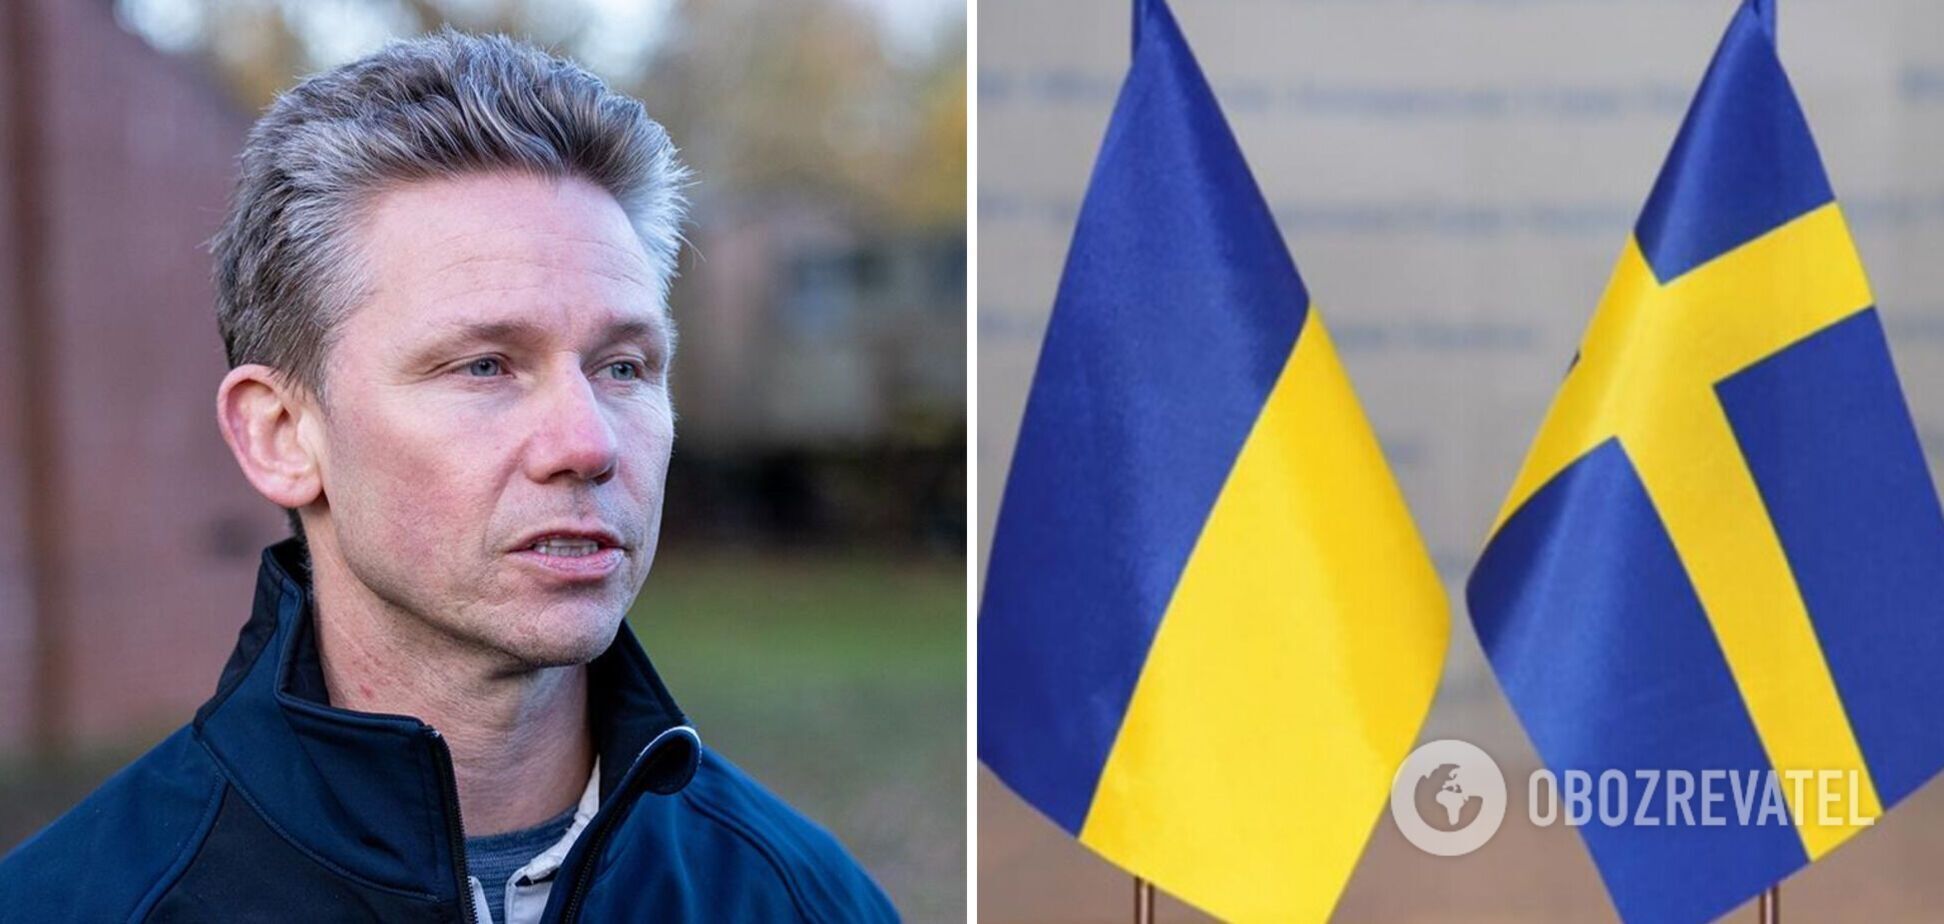 Стокгольм не планирует предоставлять Украине истребители Gripen, но поможет с ПВО, – министр обороны Швеции